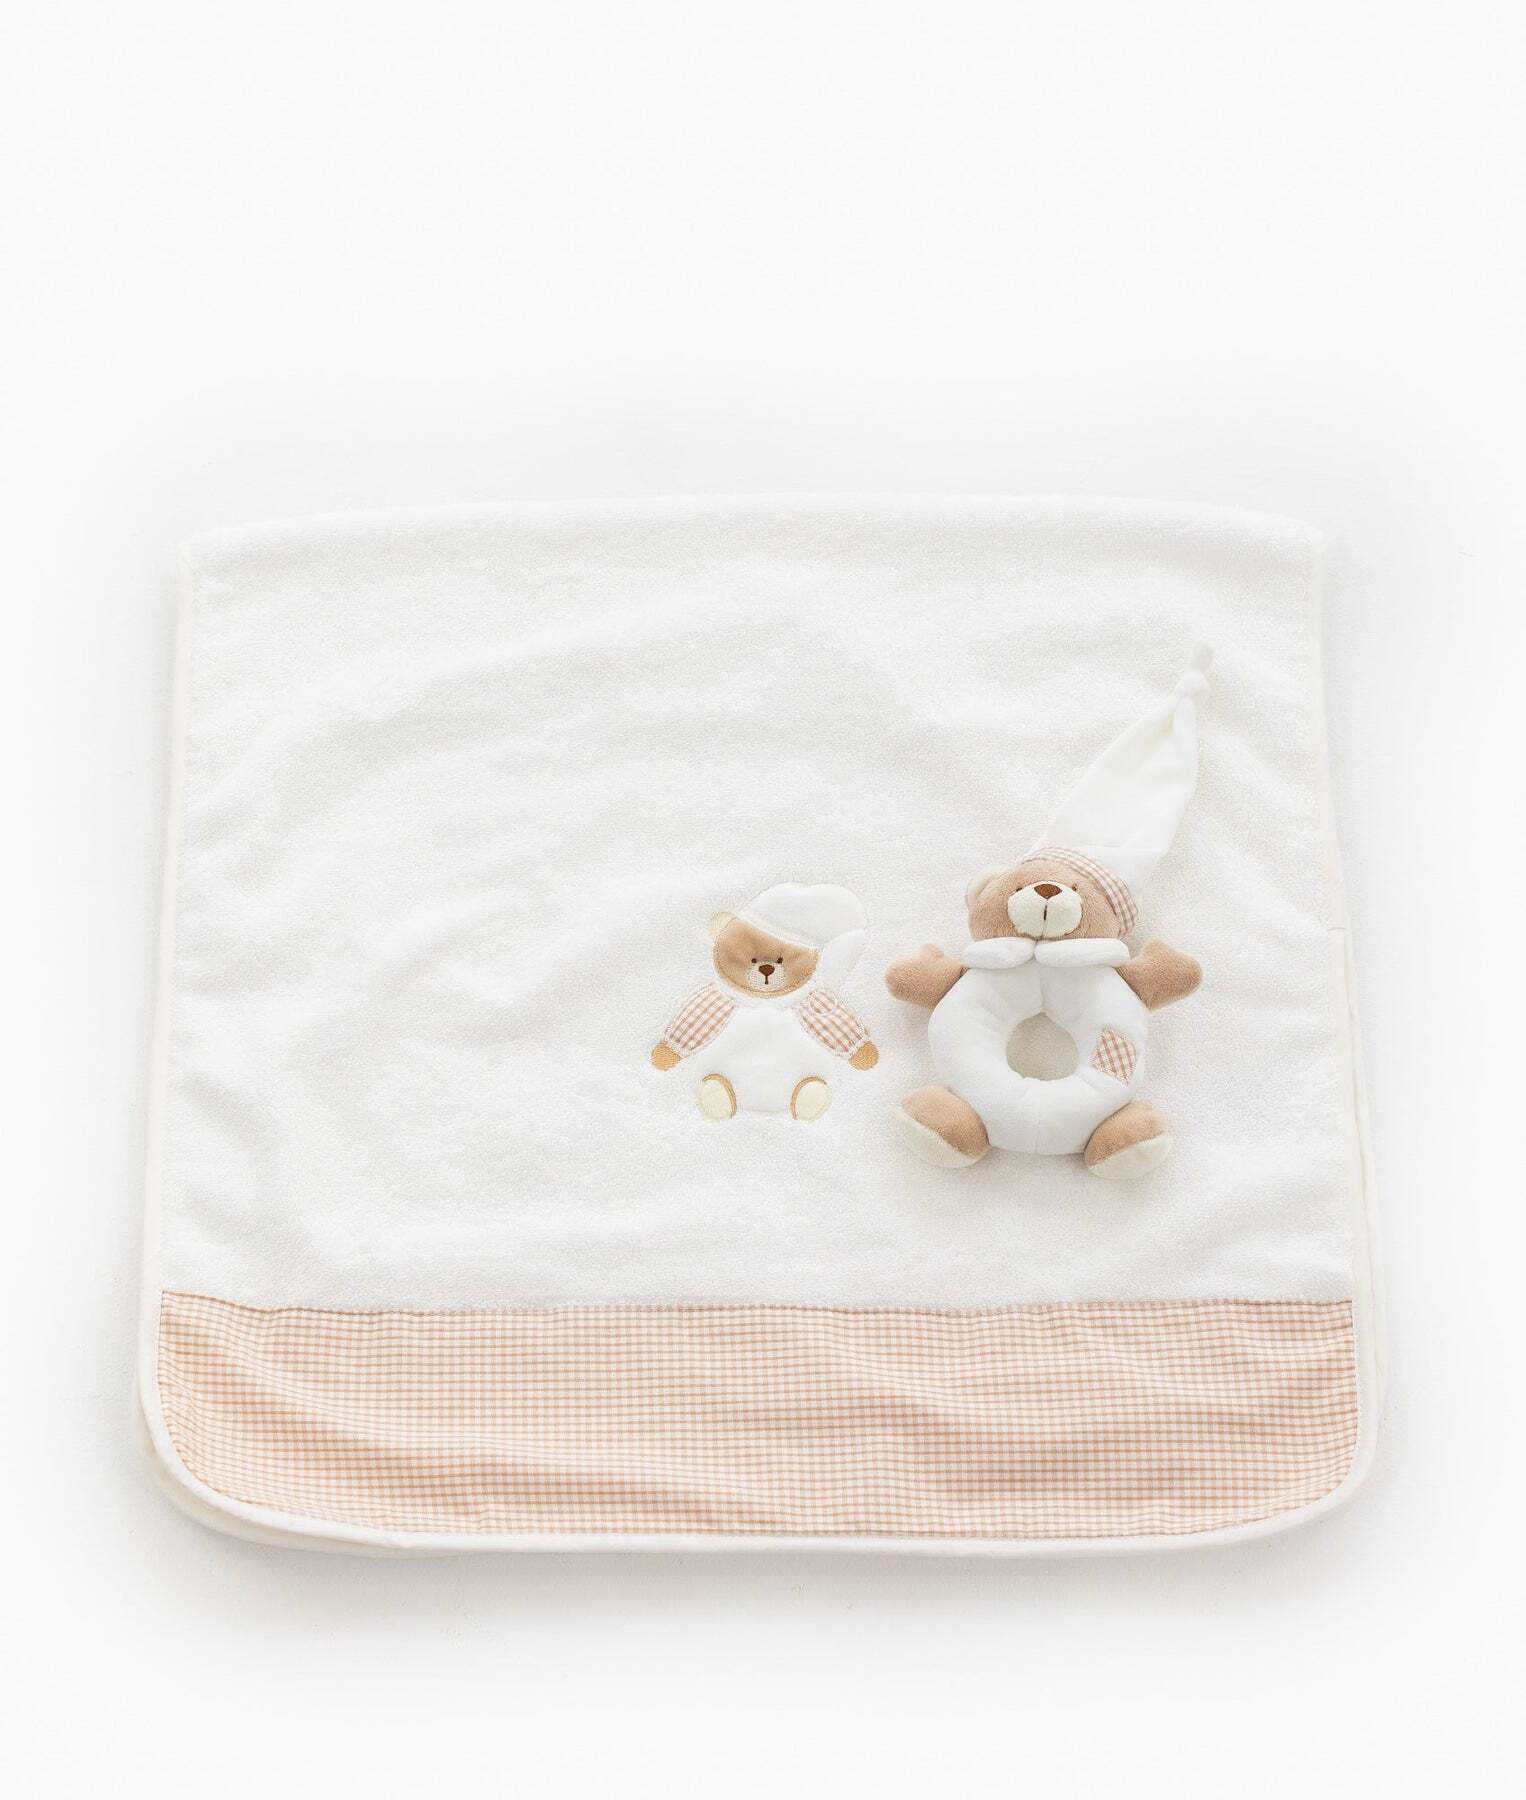 bear-towel-rattle-set-beige-635_1800x1800